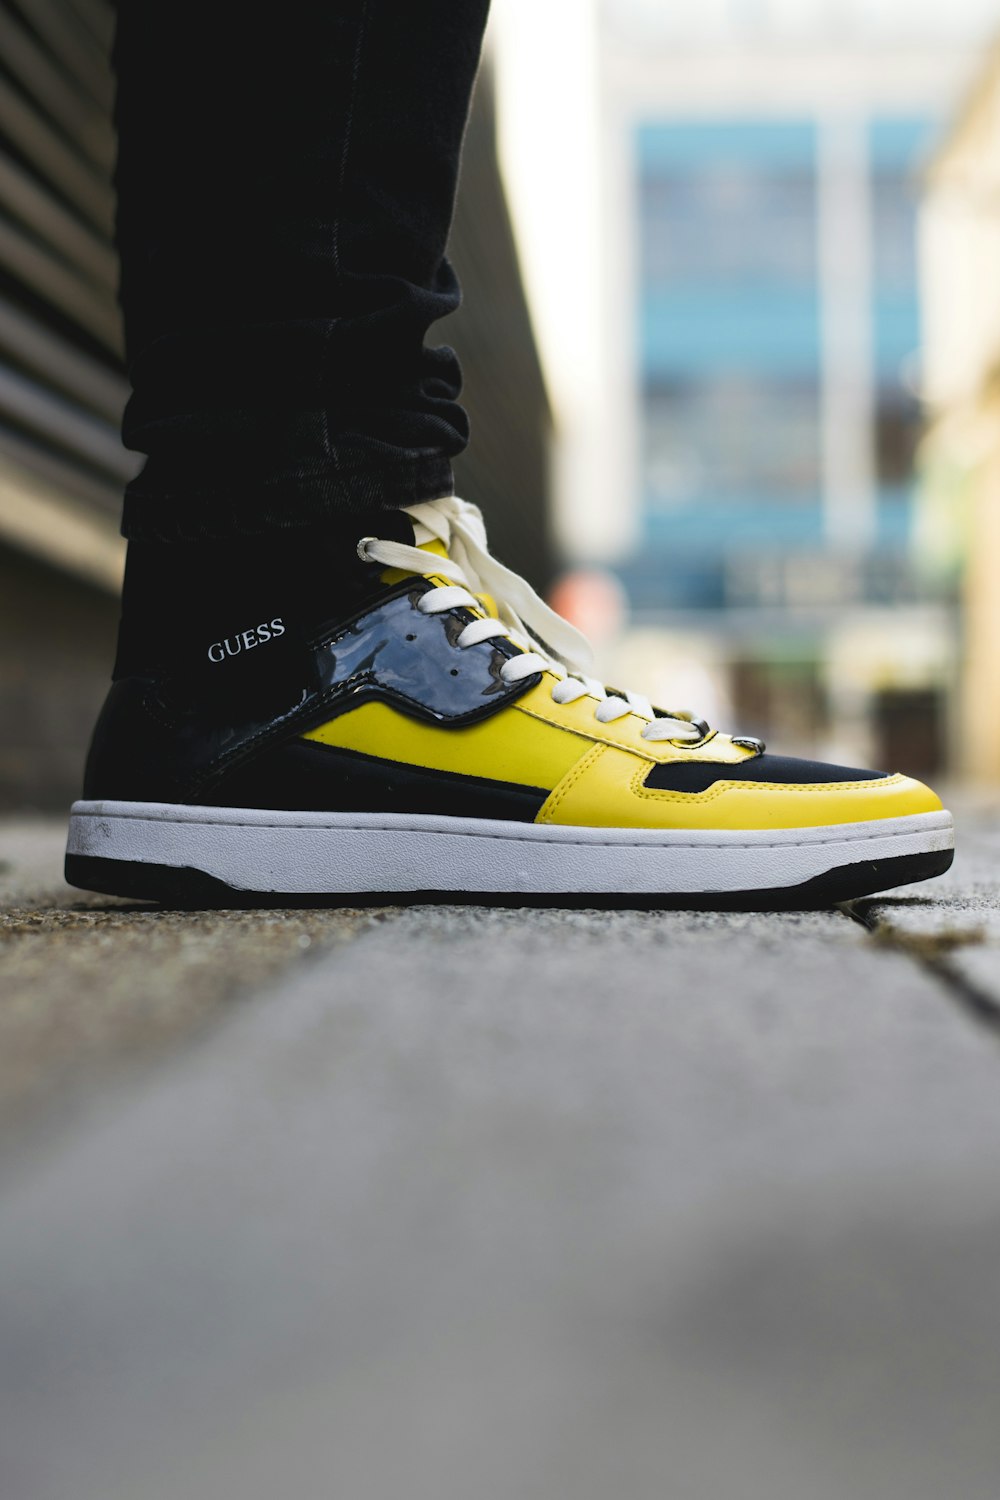 Foto par de zapatillas altas Guess amarillas y negras – Imagen Calzado  gratis en Unsplash